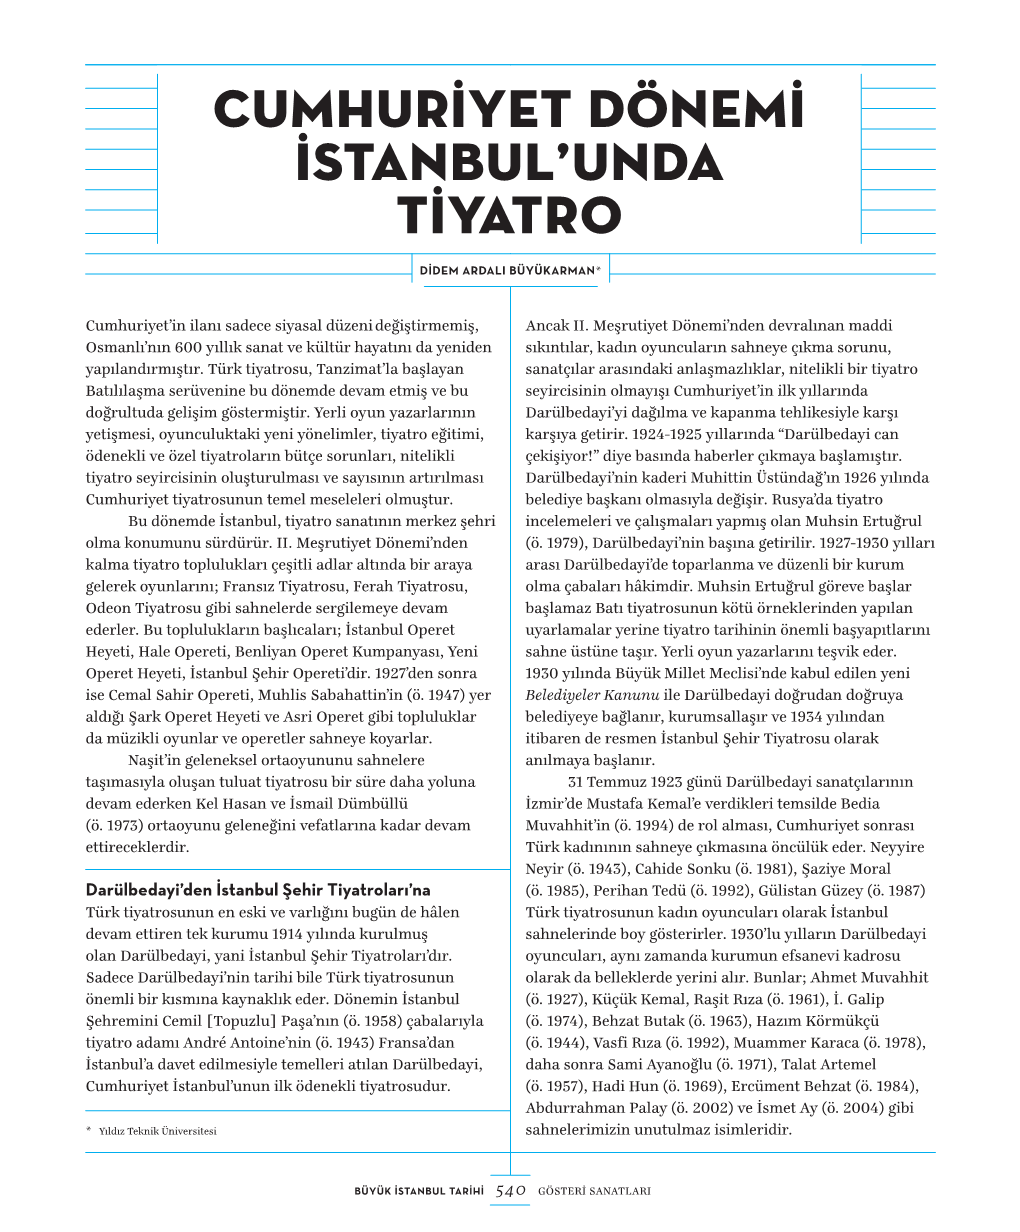 Cumhuriyet Dönemi Istanbul'unda Tiyatro